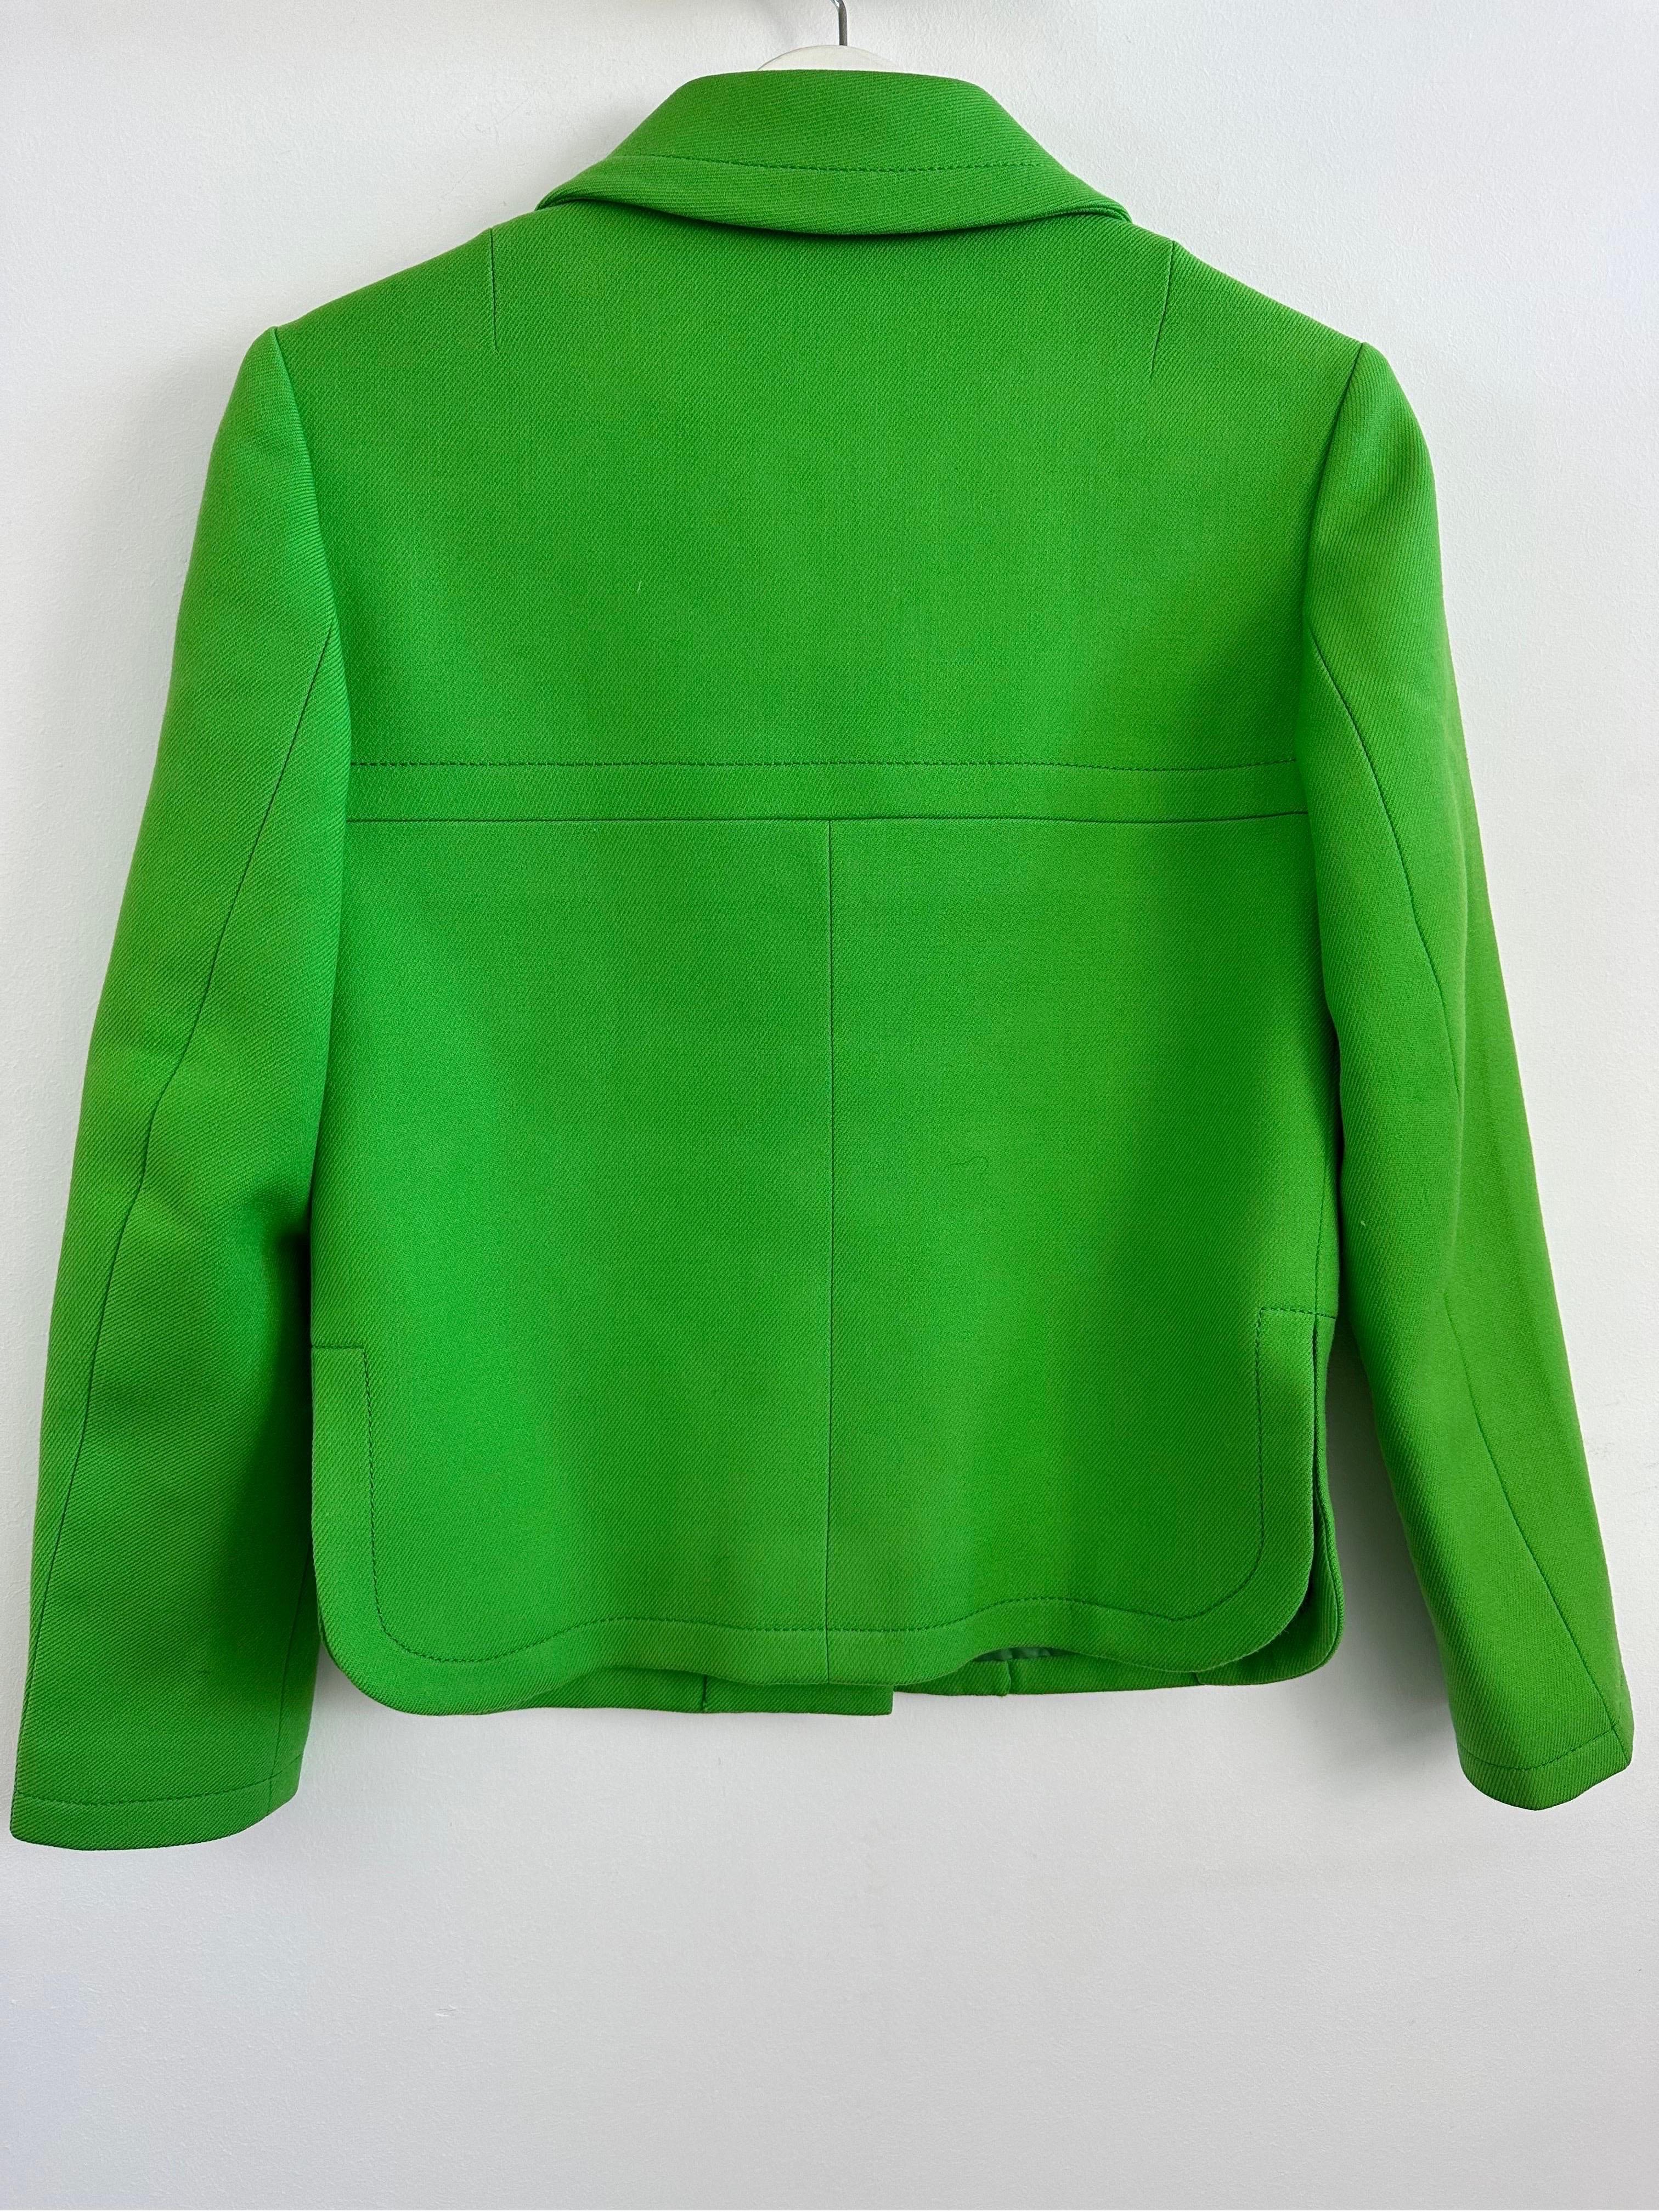 Pierre Cardin Promotion 1970s green wool jacket For Sale 1